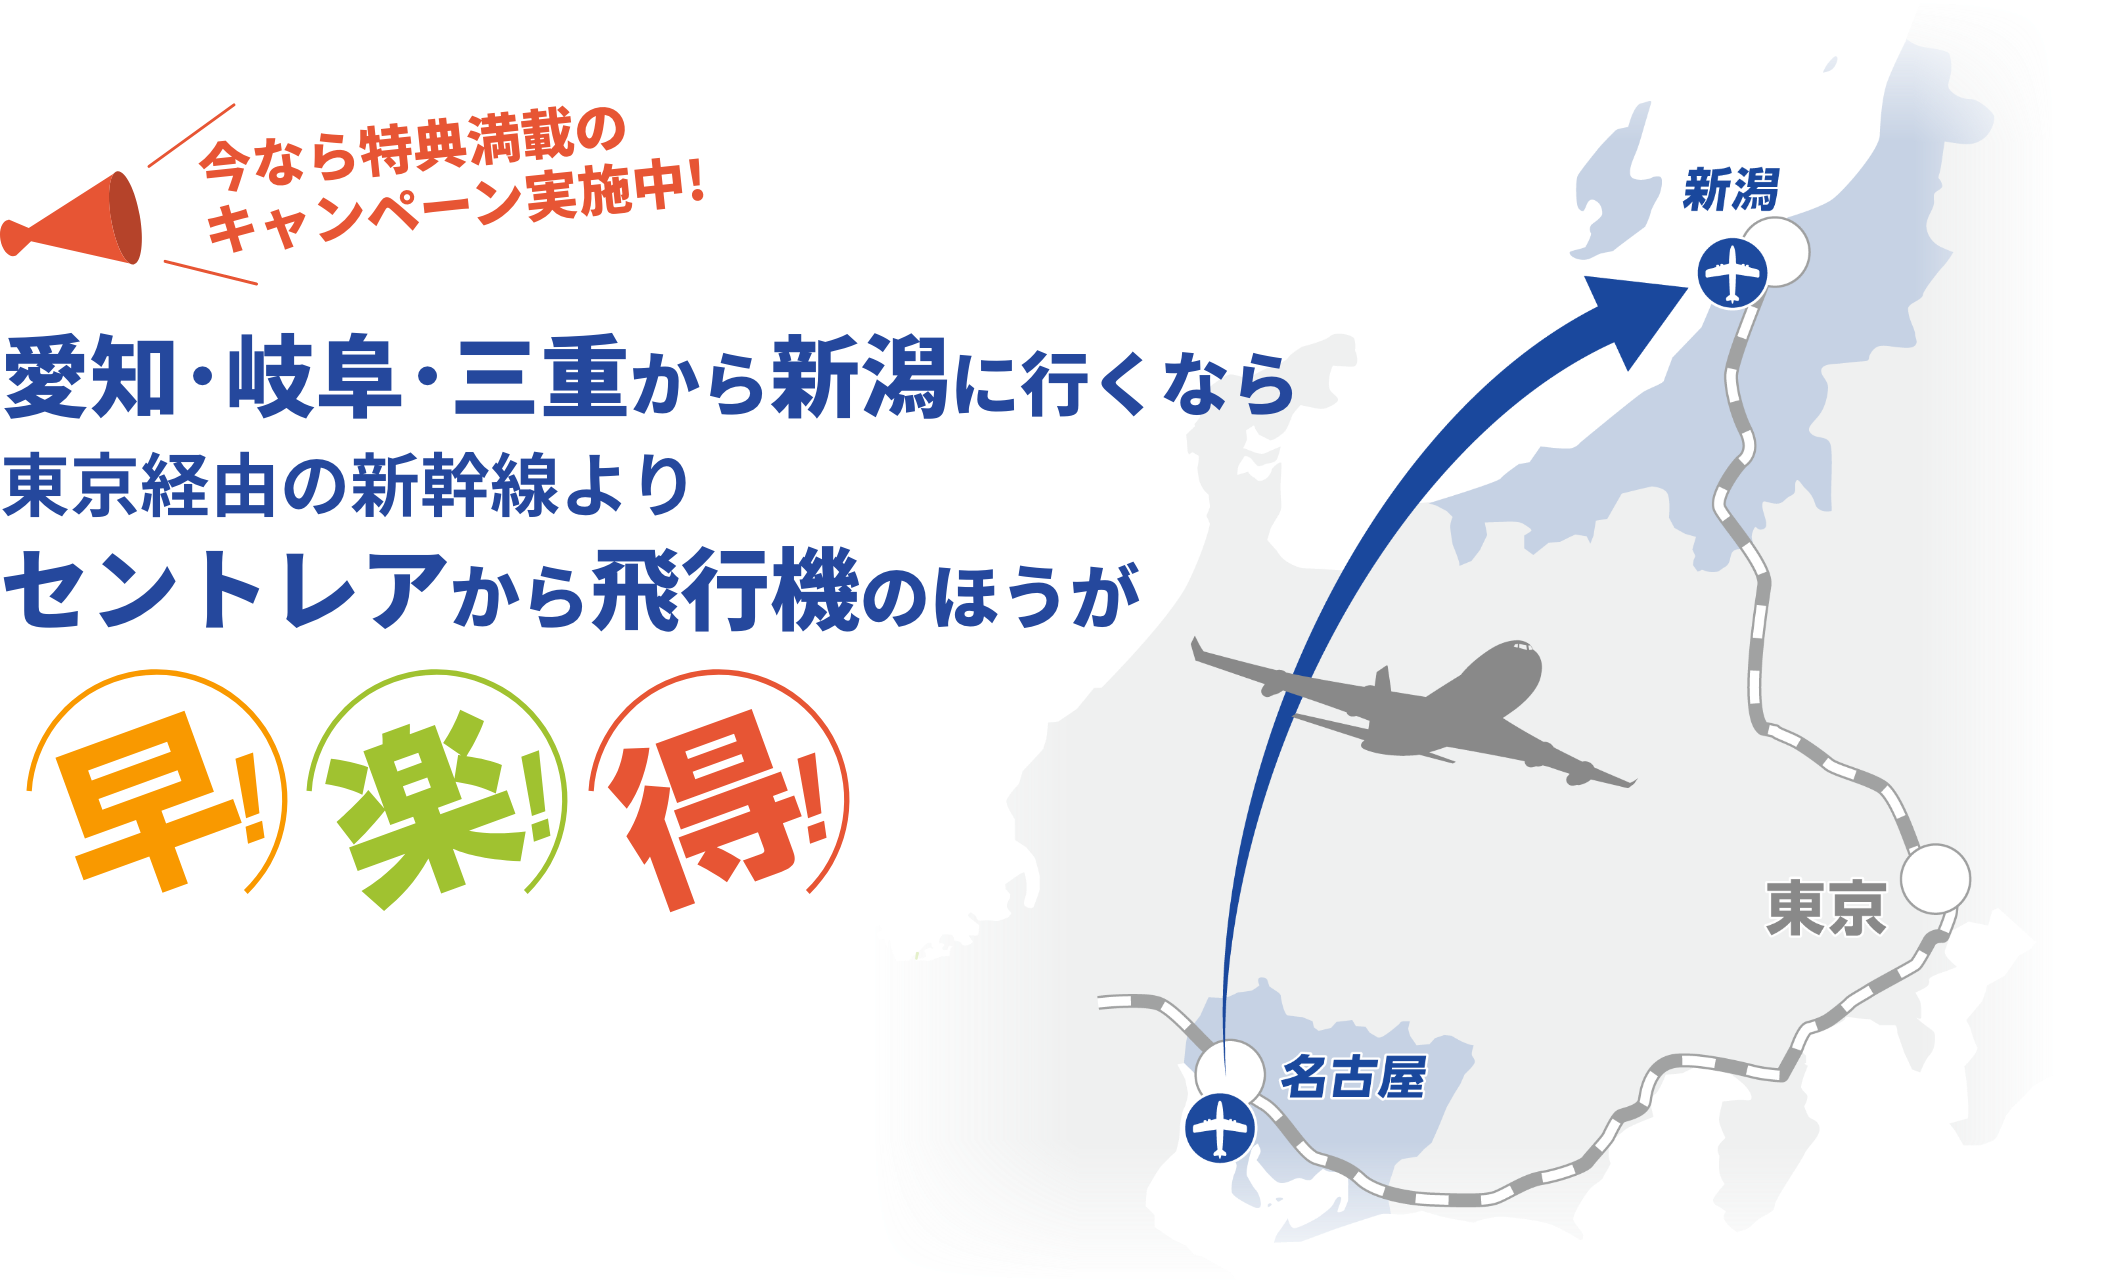 愛知・岐阜・三重から新潟に行くなら東京経由の新幹線よりセントレアから飛行機のほうが早！楽！得！